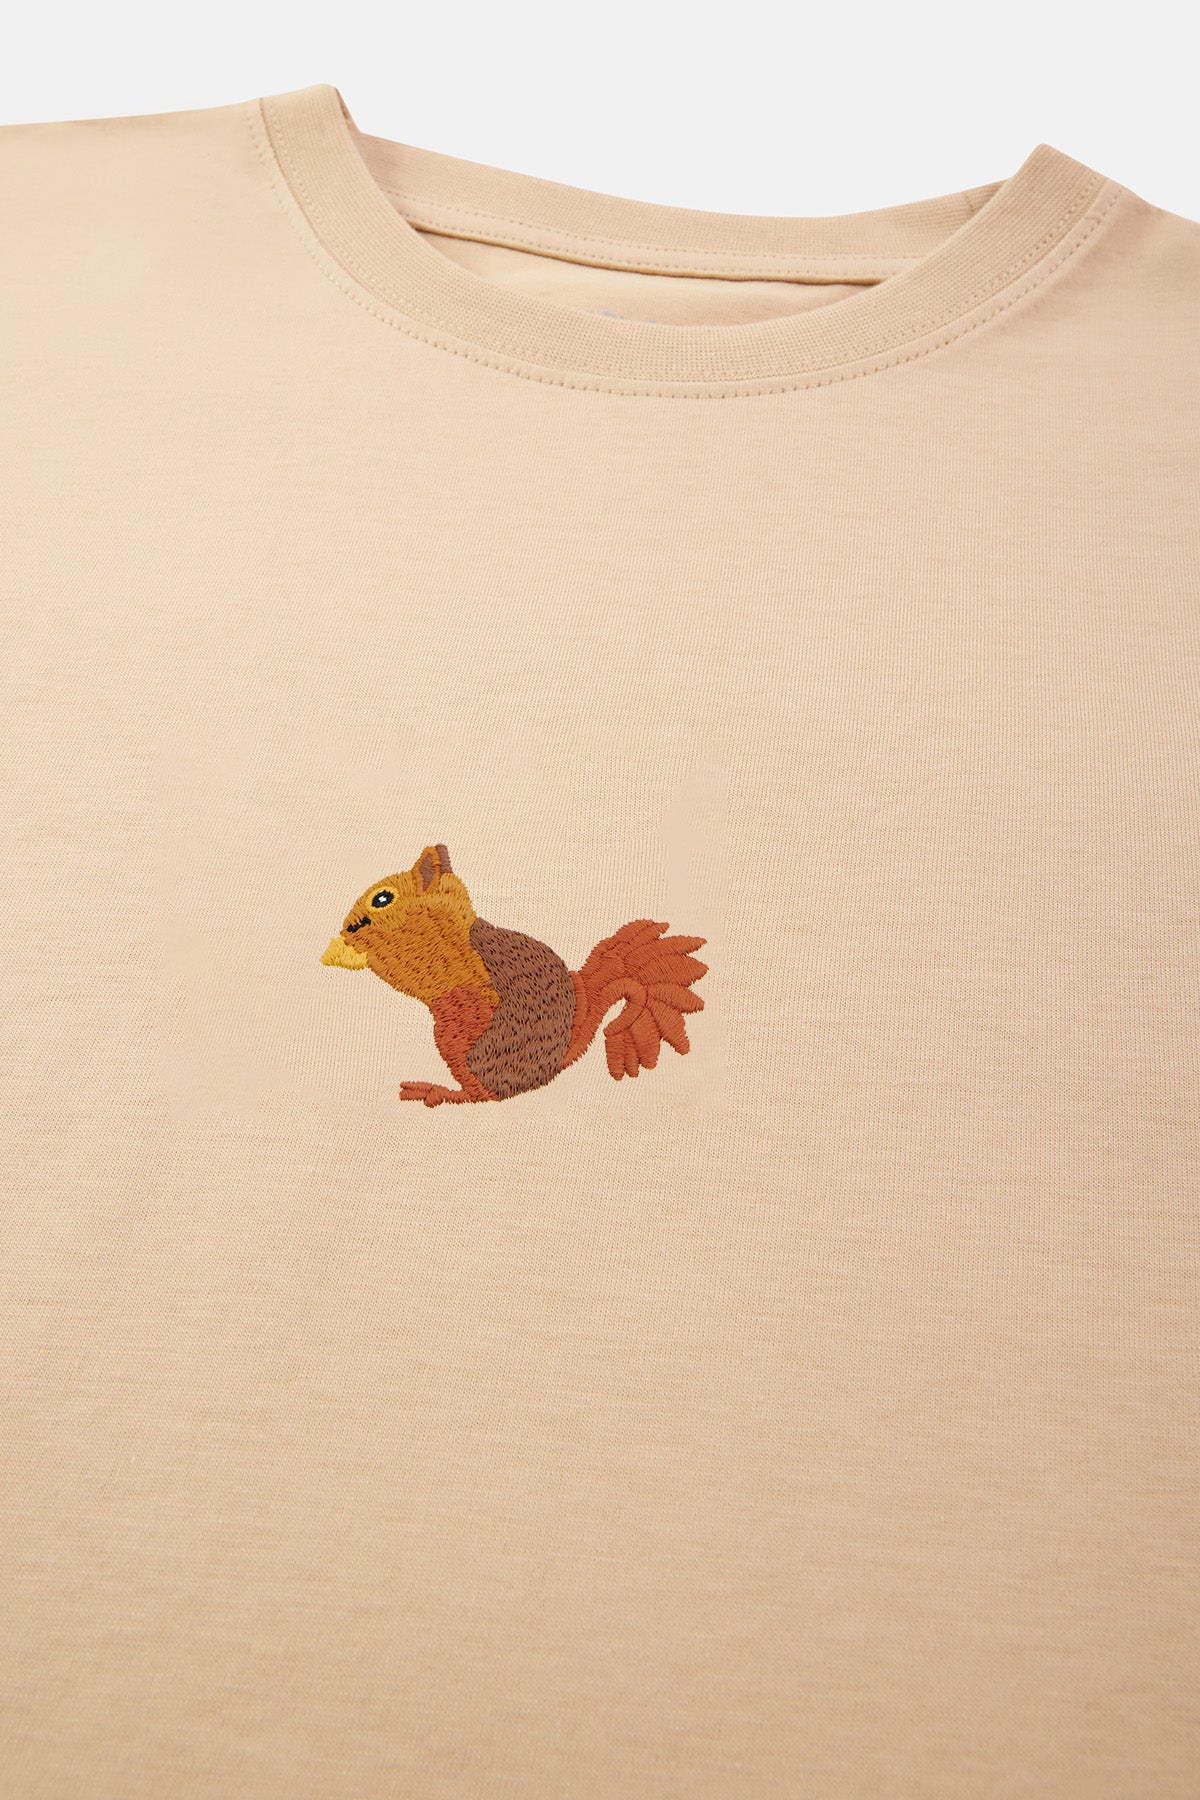 Sincap Soft Supreme T-Shirt  - Parşömen Bej